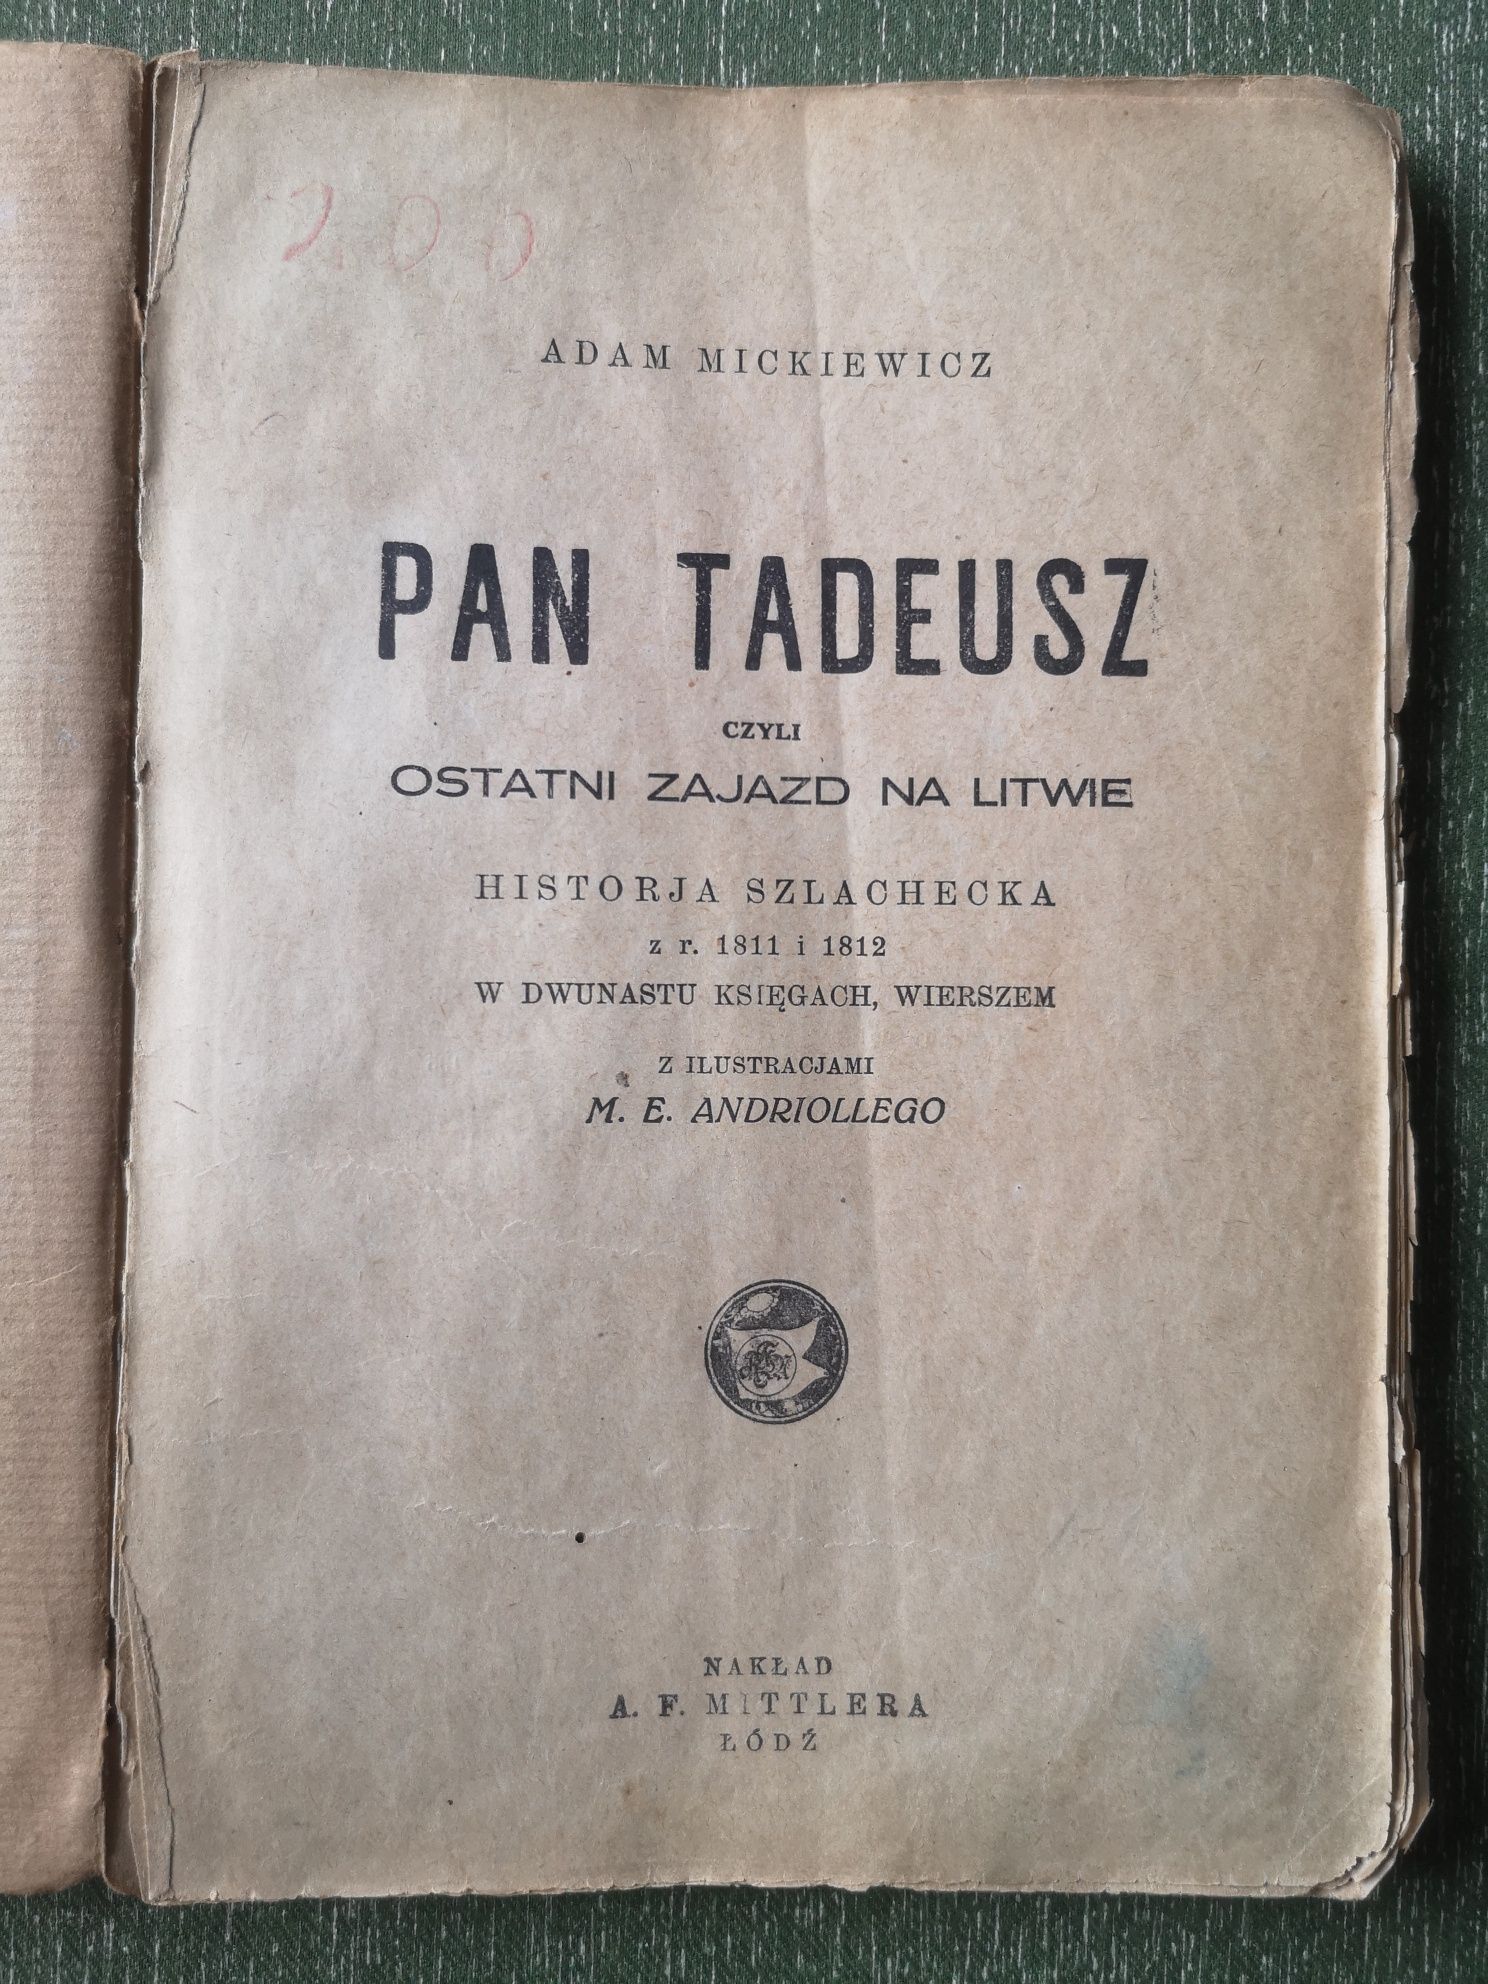 Pan Tadeusz czyli Ostatni zjazd na Litwie 1928 Łódź